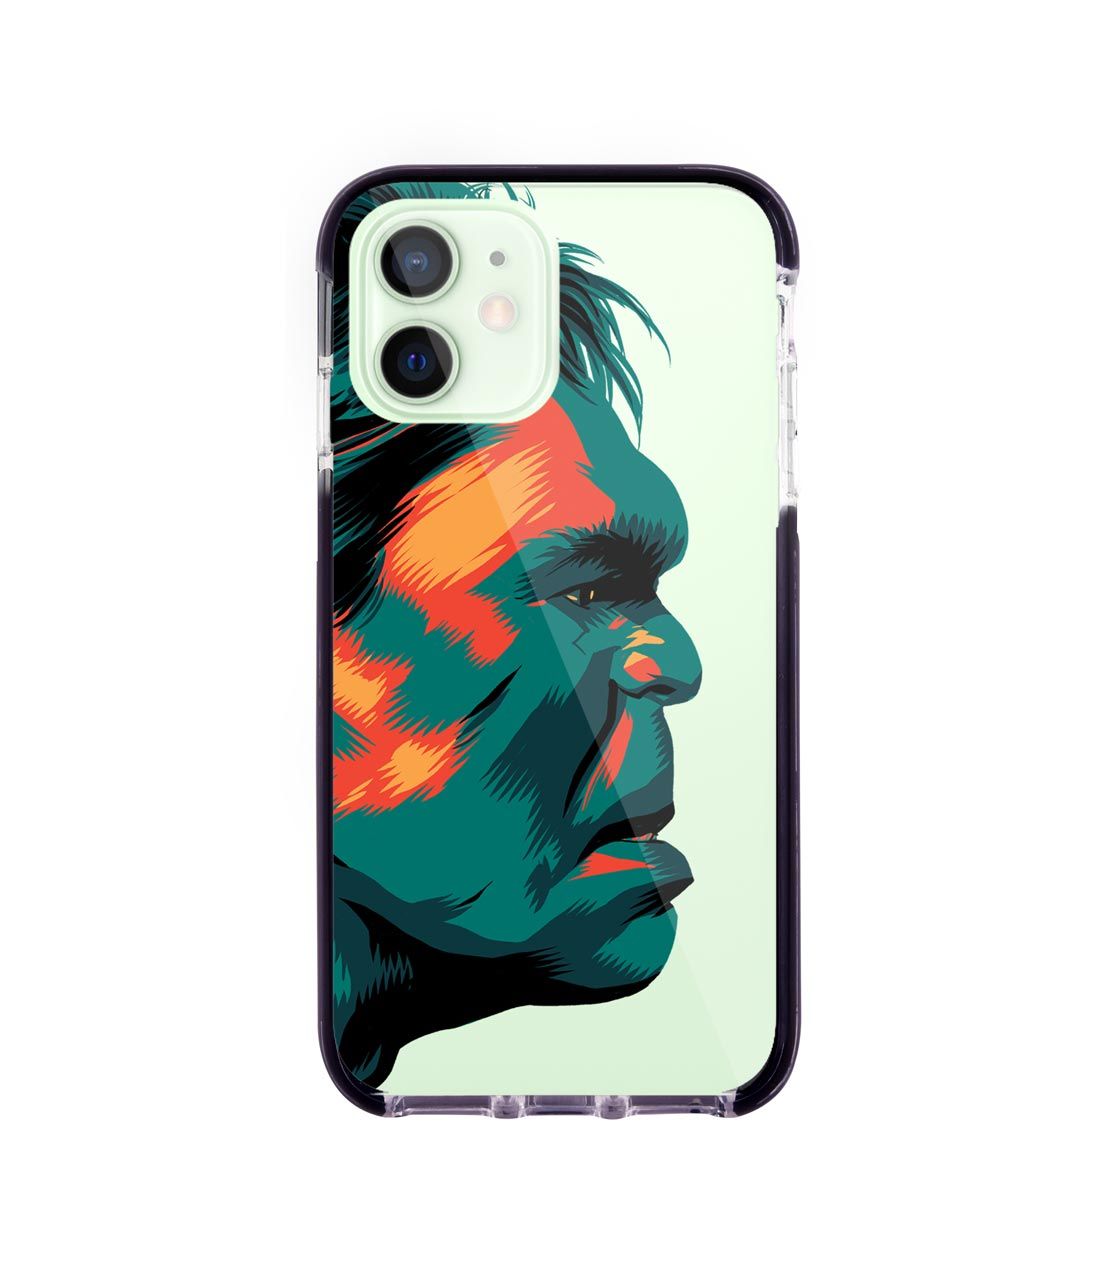 Illuminated Hulk - Extreme Case for iPhone 12 Mini